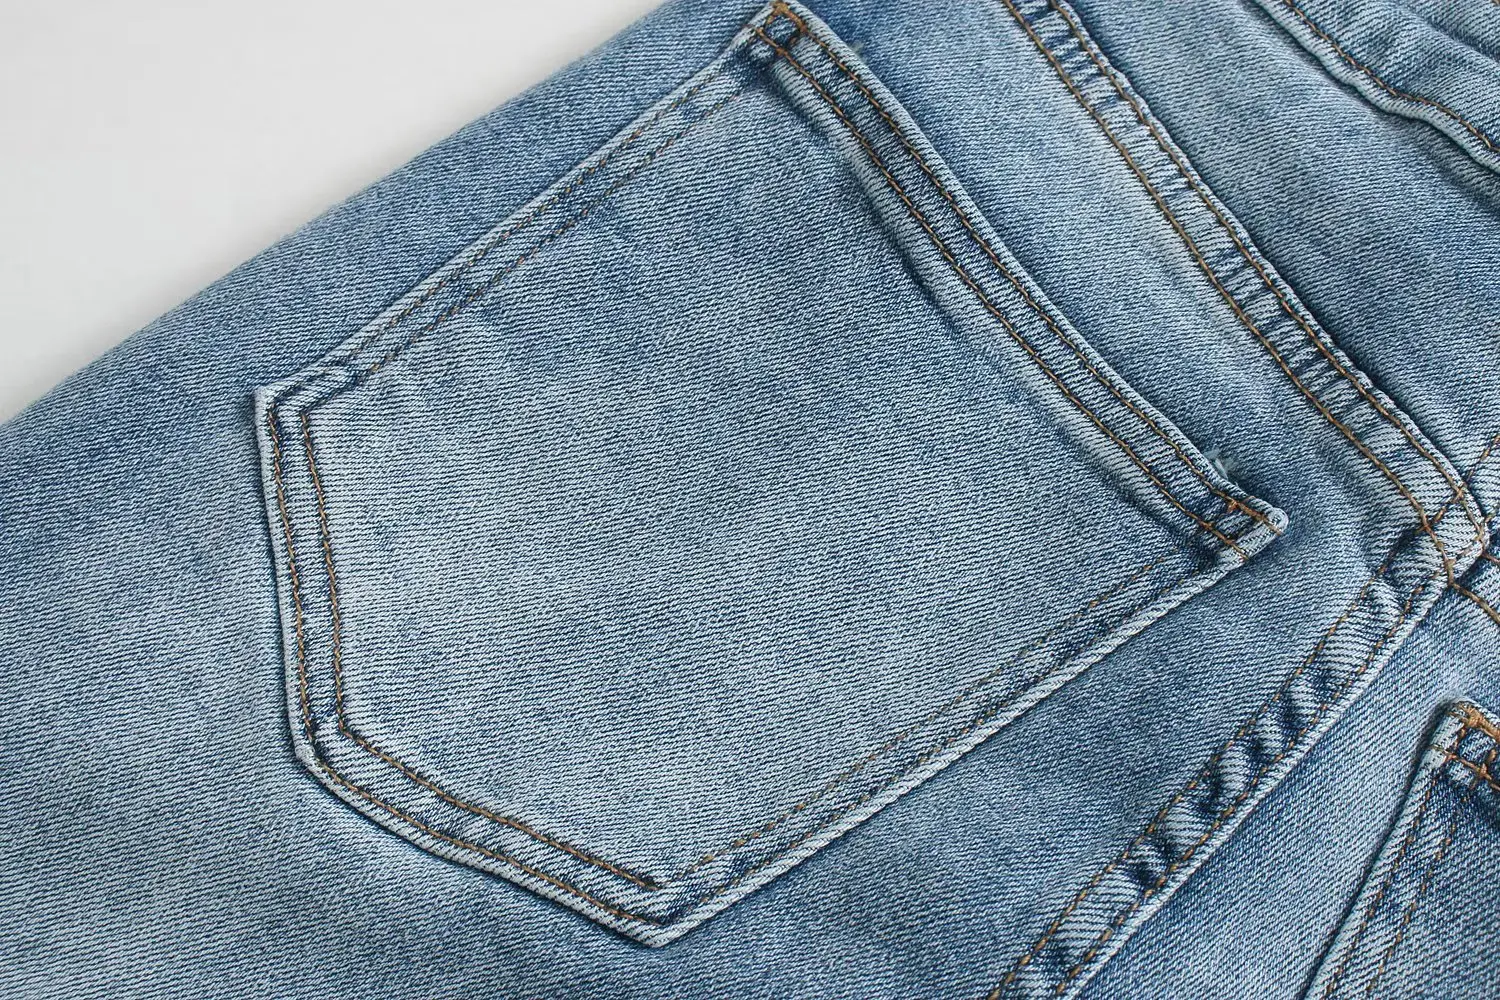 קיץ אופנה חדשה החוץ סגנון מזדמנים כל-התאמה סלים ג 'ינס מכנסיים של נשים גבוהה המותניים מיקרו התלקח ג' ינס